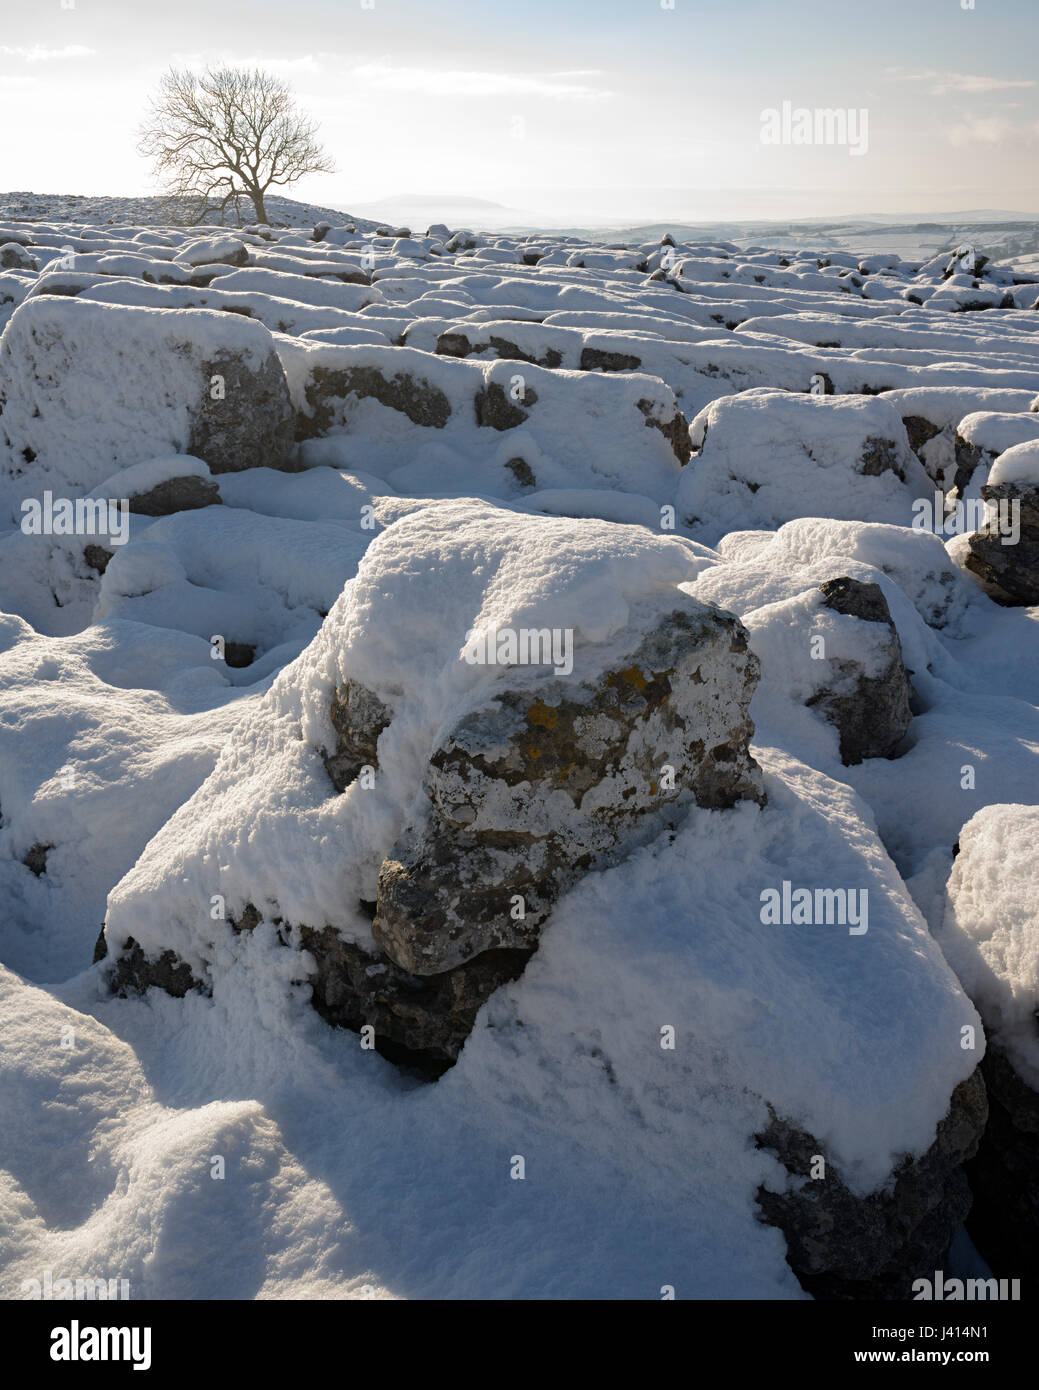 La neige ensoleillée couverte de lichen sur lapiez au-dessus de Malham, Yorkshire Dales. Frêne solitaire. Distance à Pendle. Focus-stacked image paysage. Banque D'Images